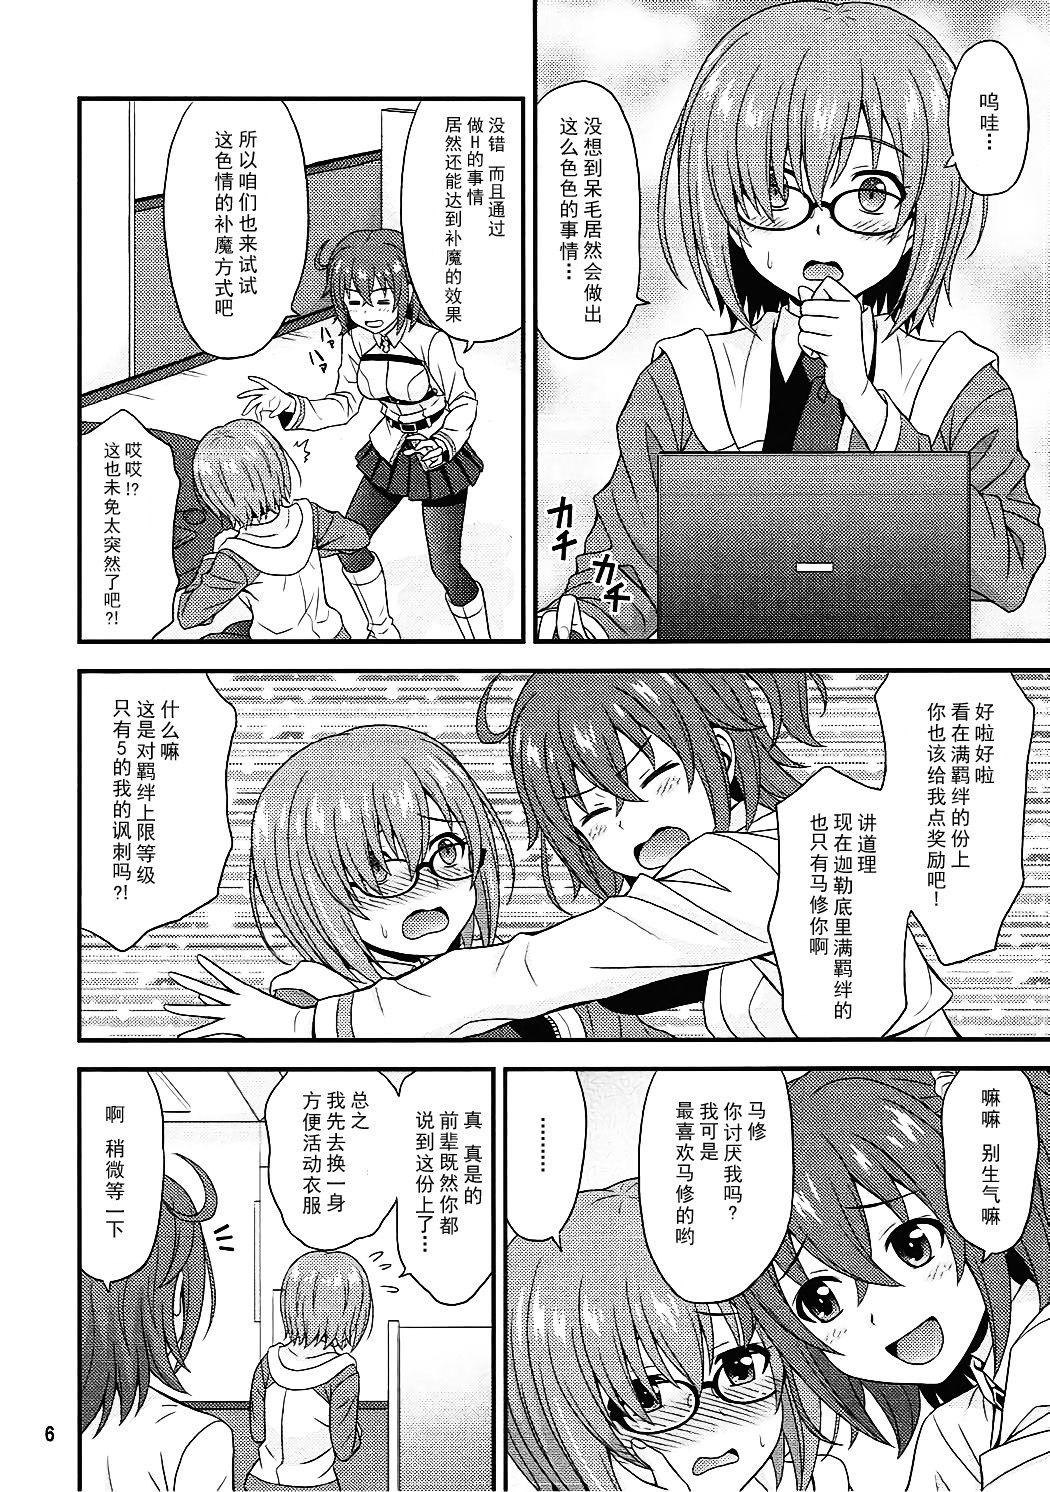 Transex Uchi no Megane no Niau Tayoreru Kouhai ga Totemo Kawaii! - Fate grand order Arab - Page 6